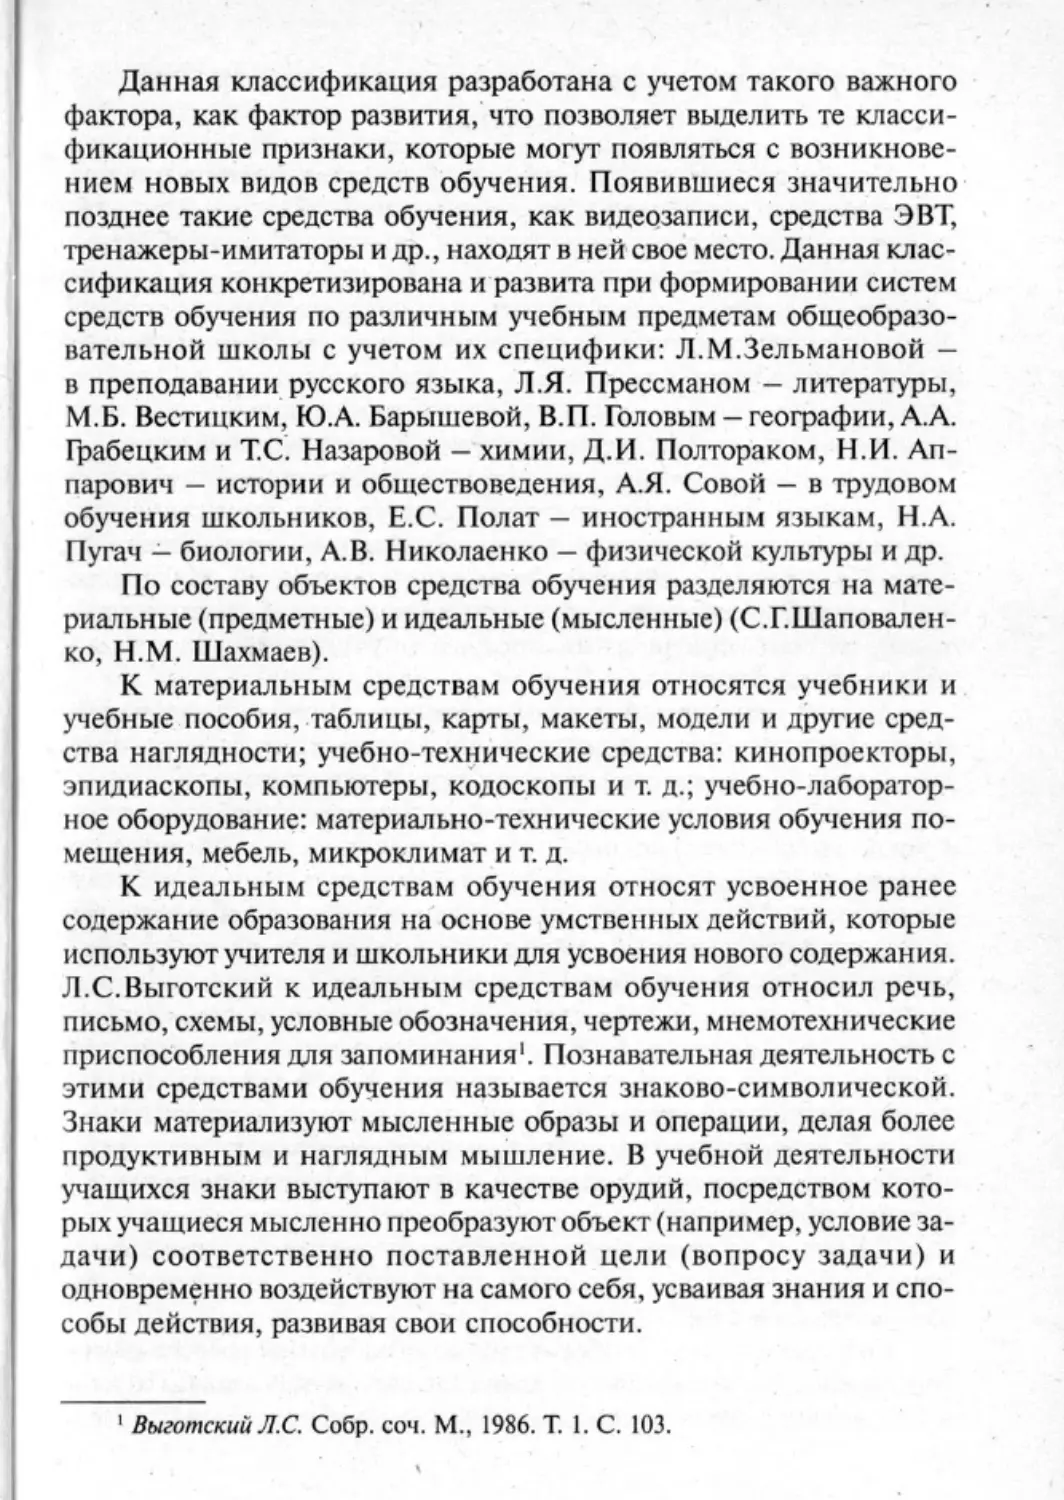 Загрекова Л.В., Николаева В.В - 0276